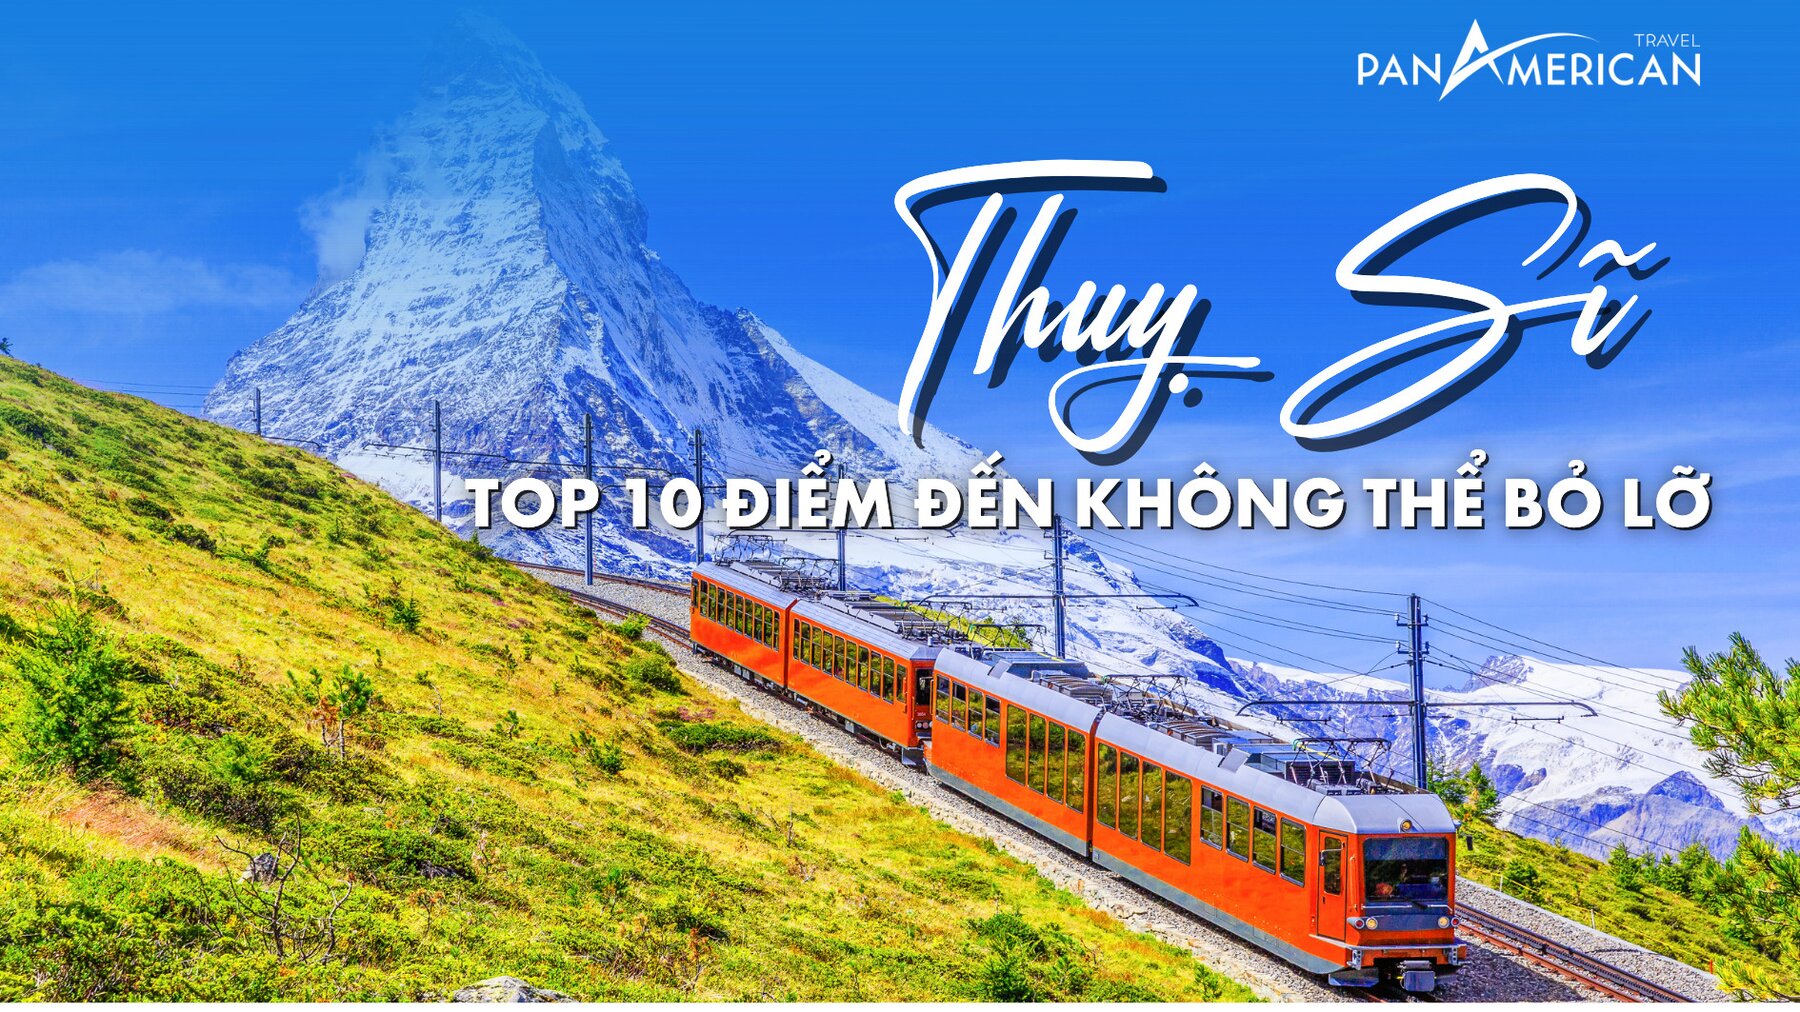 Top 10 địa điểm du lịch Thuỵ Sĩ nhất định bạn phải ghé thăm